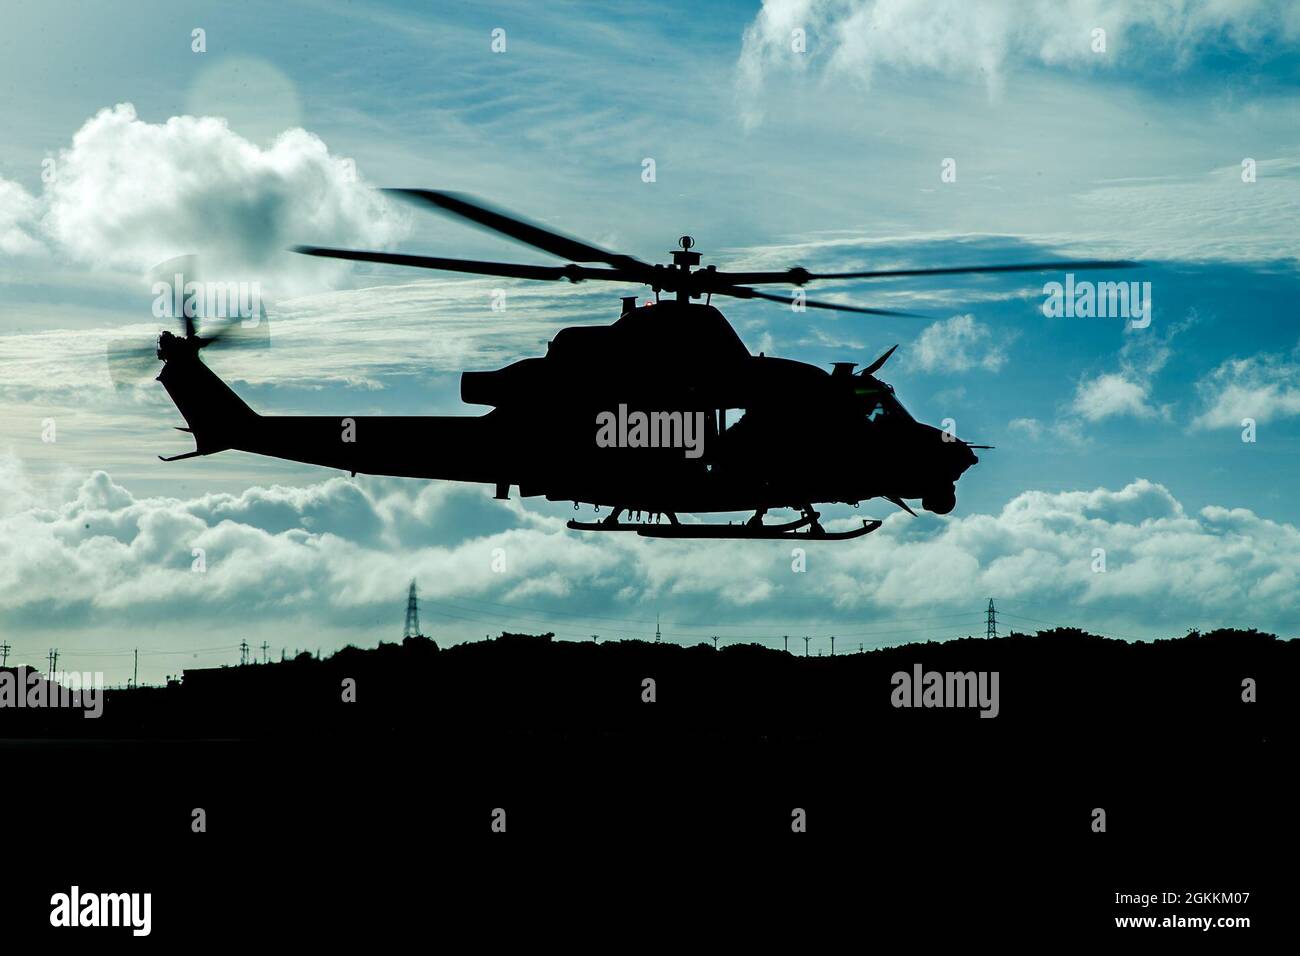 Un elicottero UH-1Y Venom del corpo Marino degli Stati Uniti assegnato a Light Attack Helicopter Squadron (HMLA) 169 si prepara a decollo durante un esercizio di addestramento alla Stazione aerea del corpo Marino Futenma, Okinawa, Giappone, 18 maggio 2021. HMLA-169 ha condotto le operazioni di volo al fine di rimanere preparato ed efficiente per qualsiasi operazione nella regione indo-pacific. Foto Stock